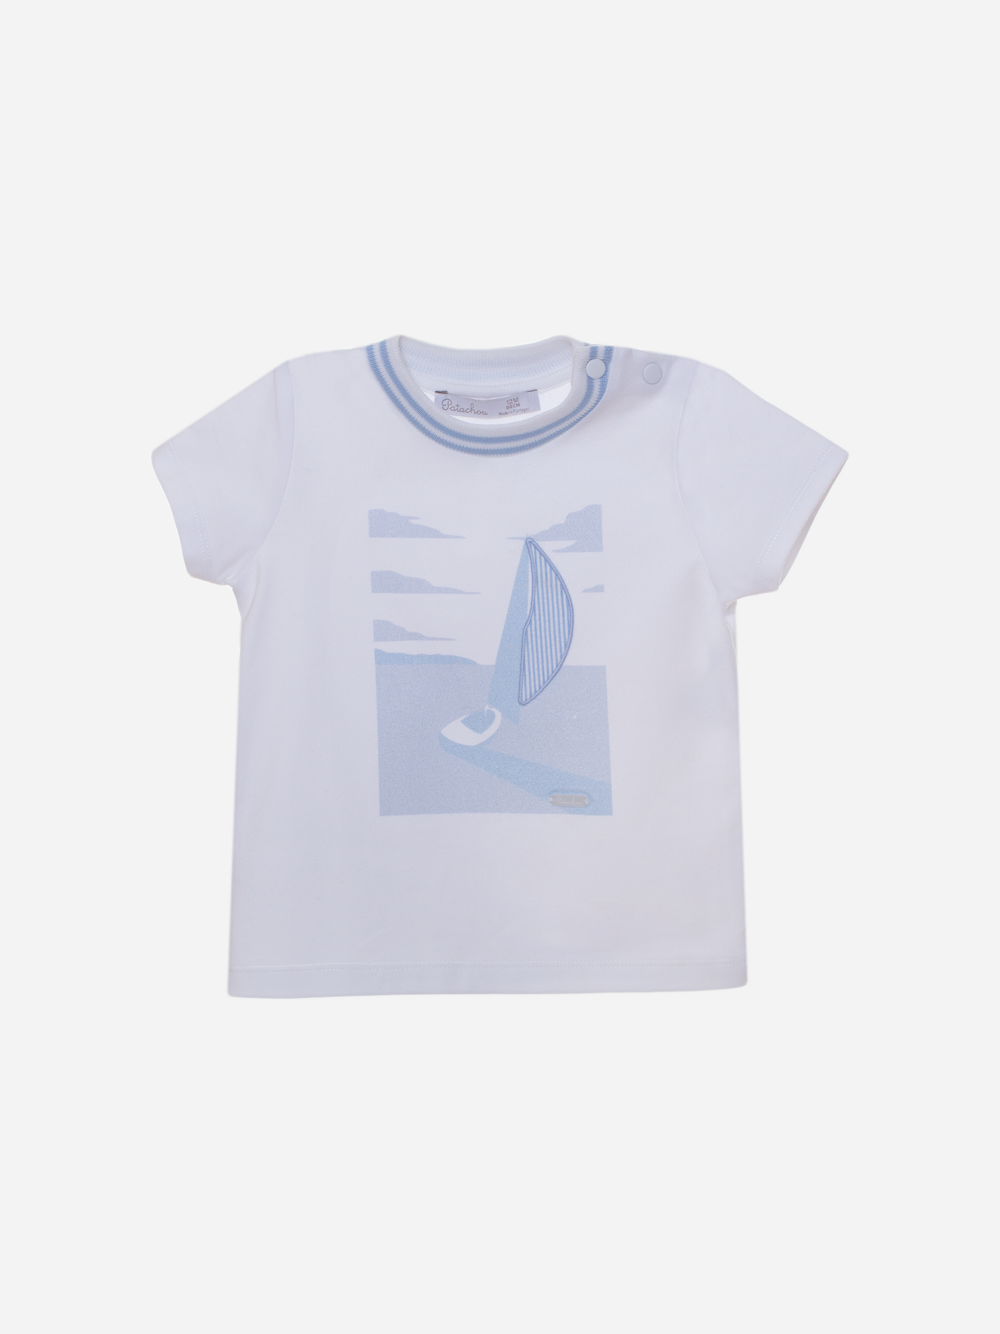 T-shirt branca com barco estampado